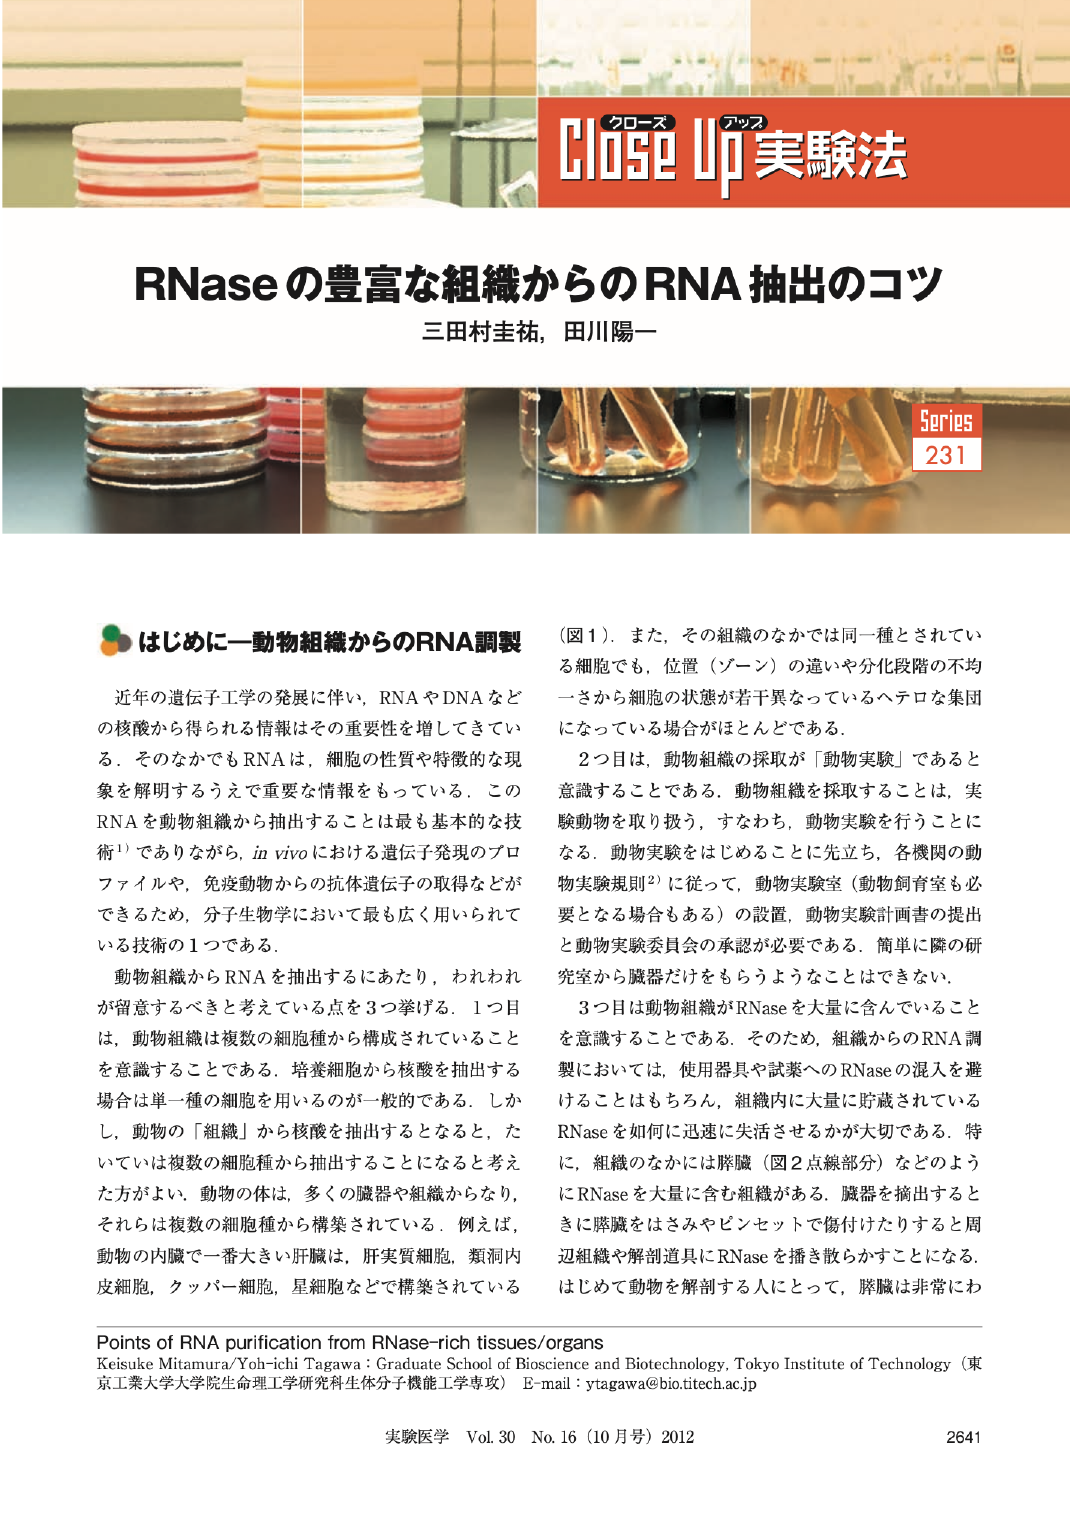 RNaseの豊富な組織からのRNA抽出のコツ